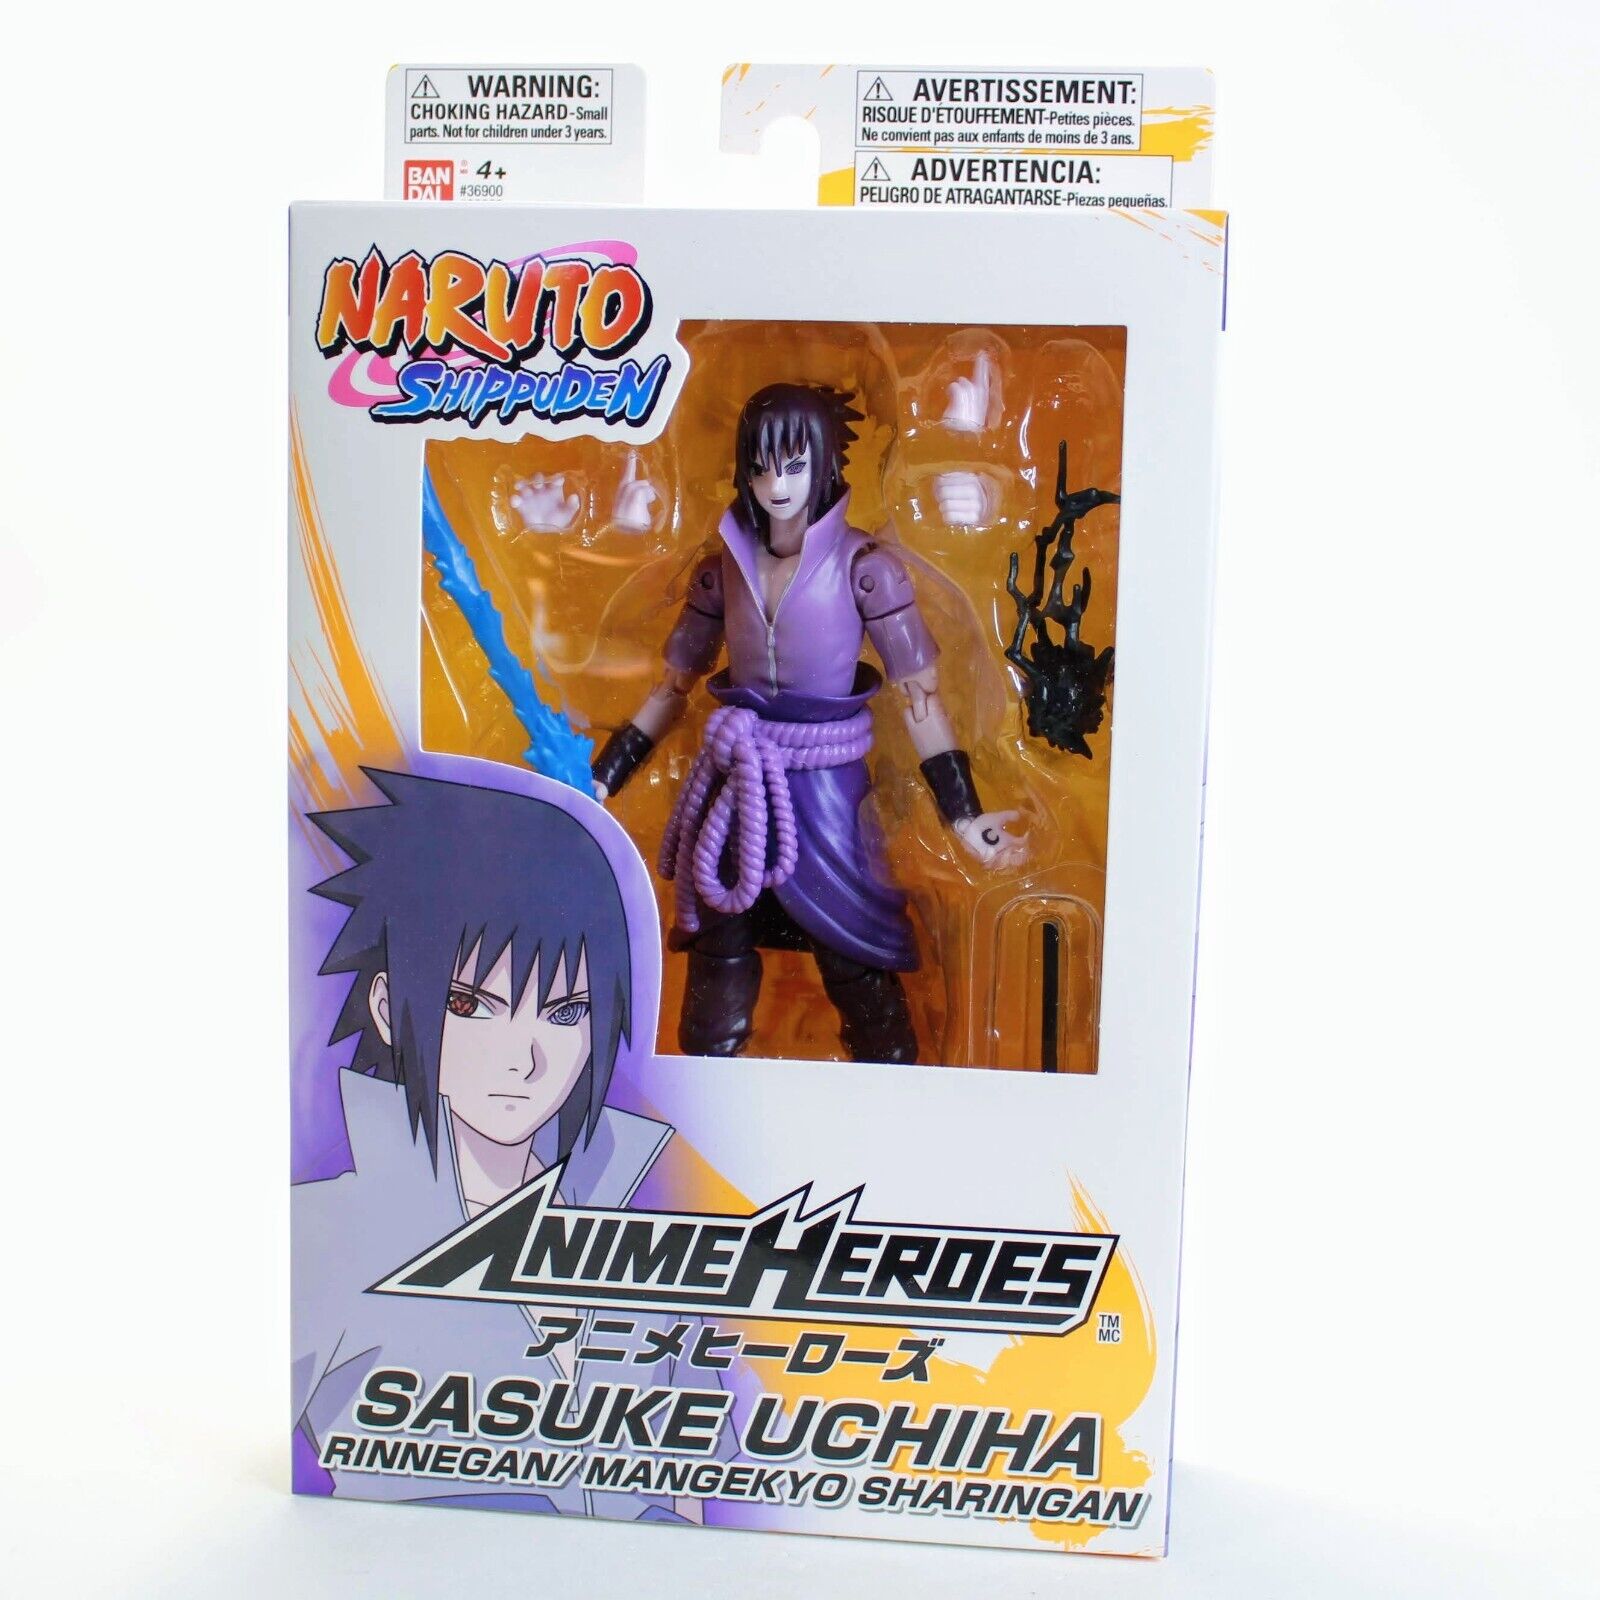 Anime Heroes Figure Uchiha Itachi 6.5 Action Figure